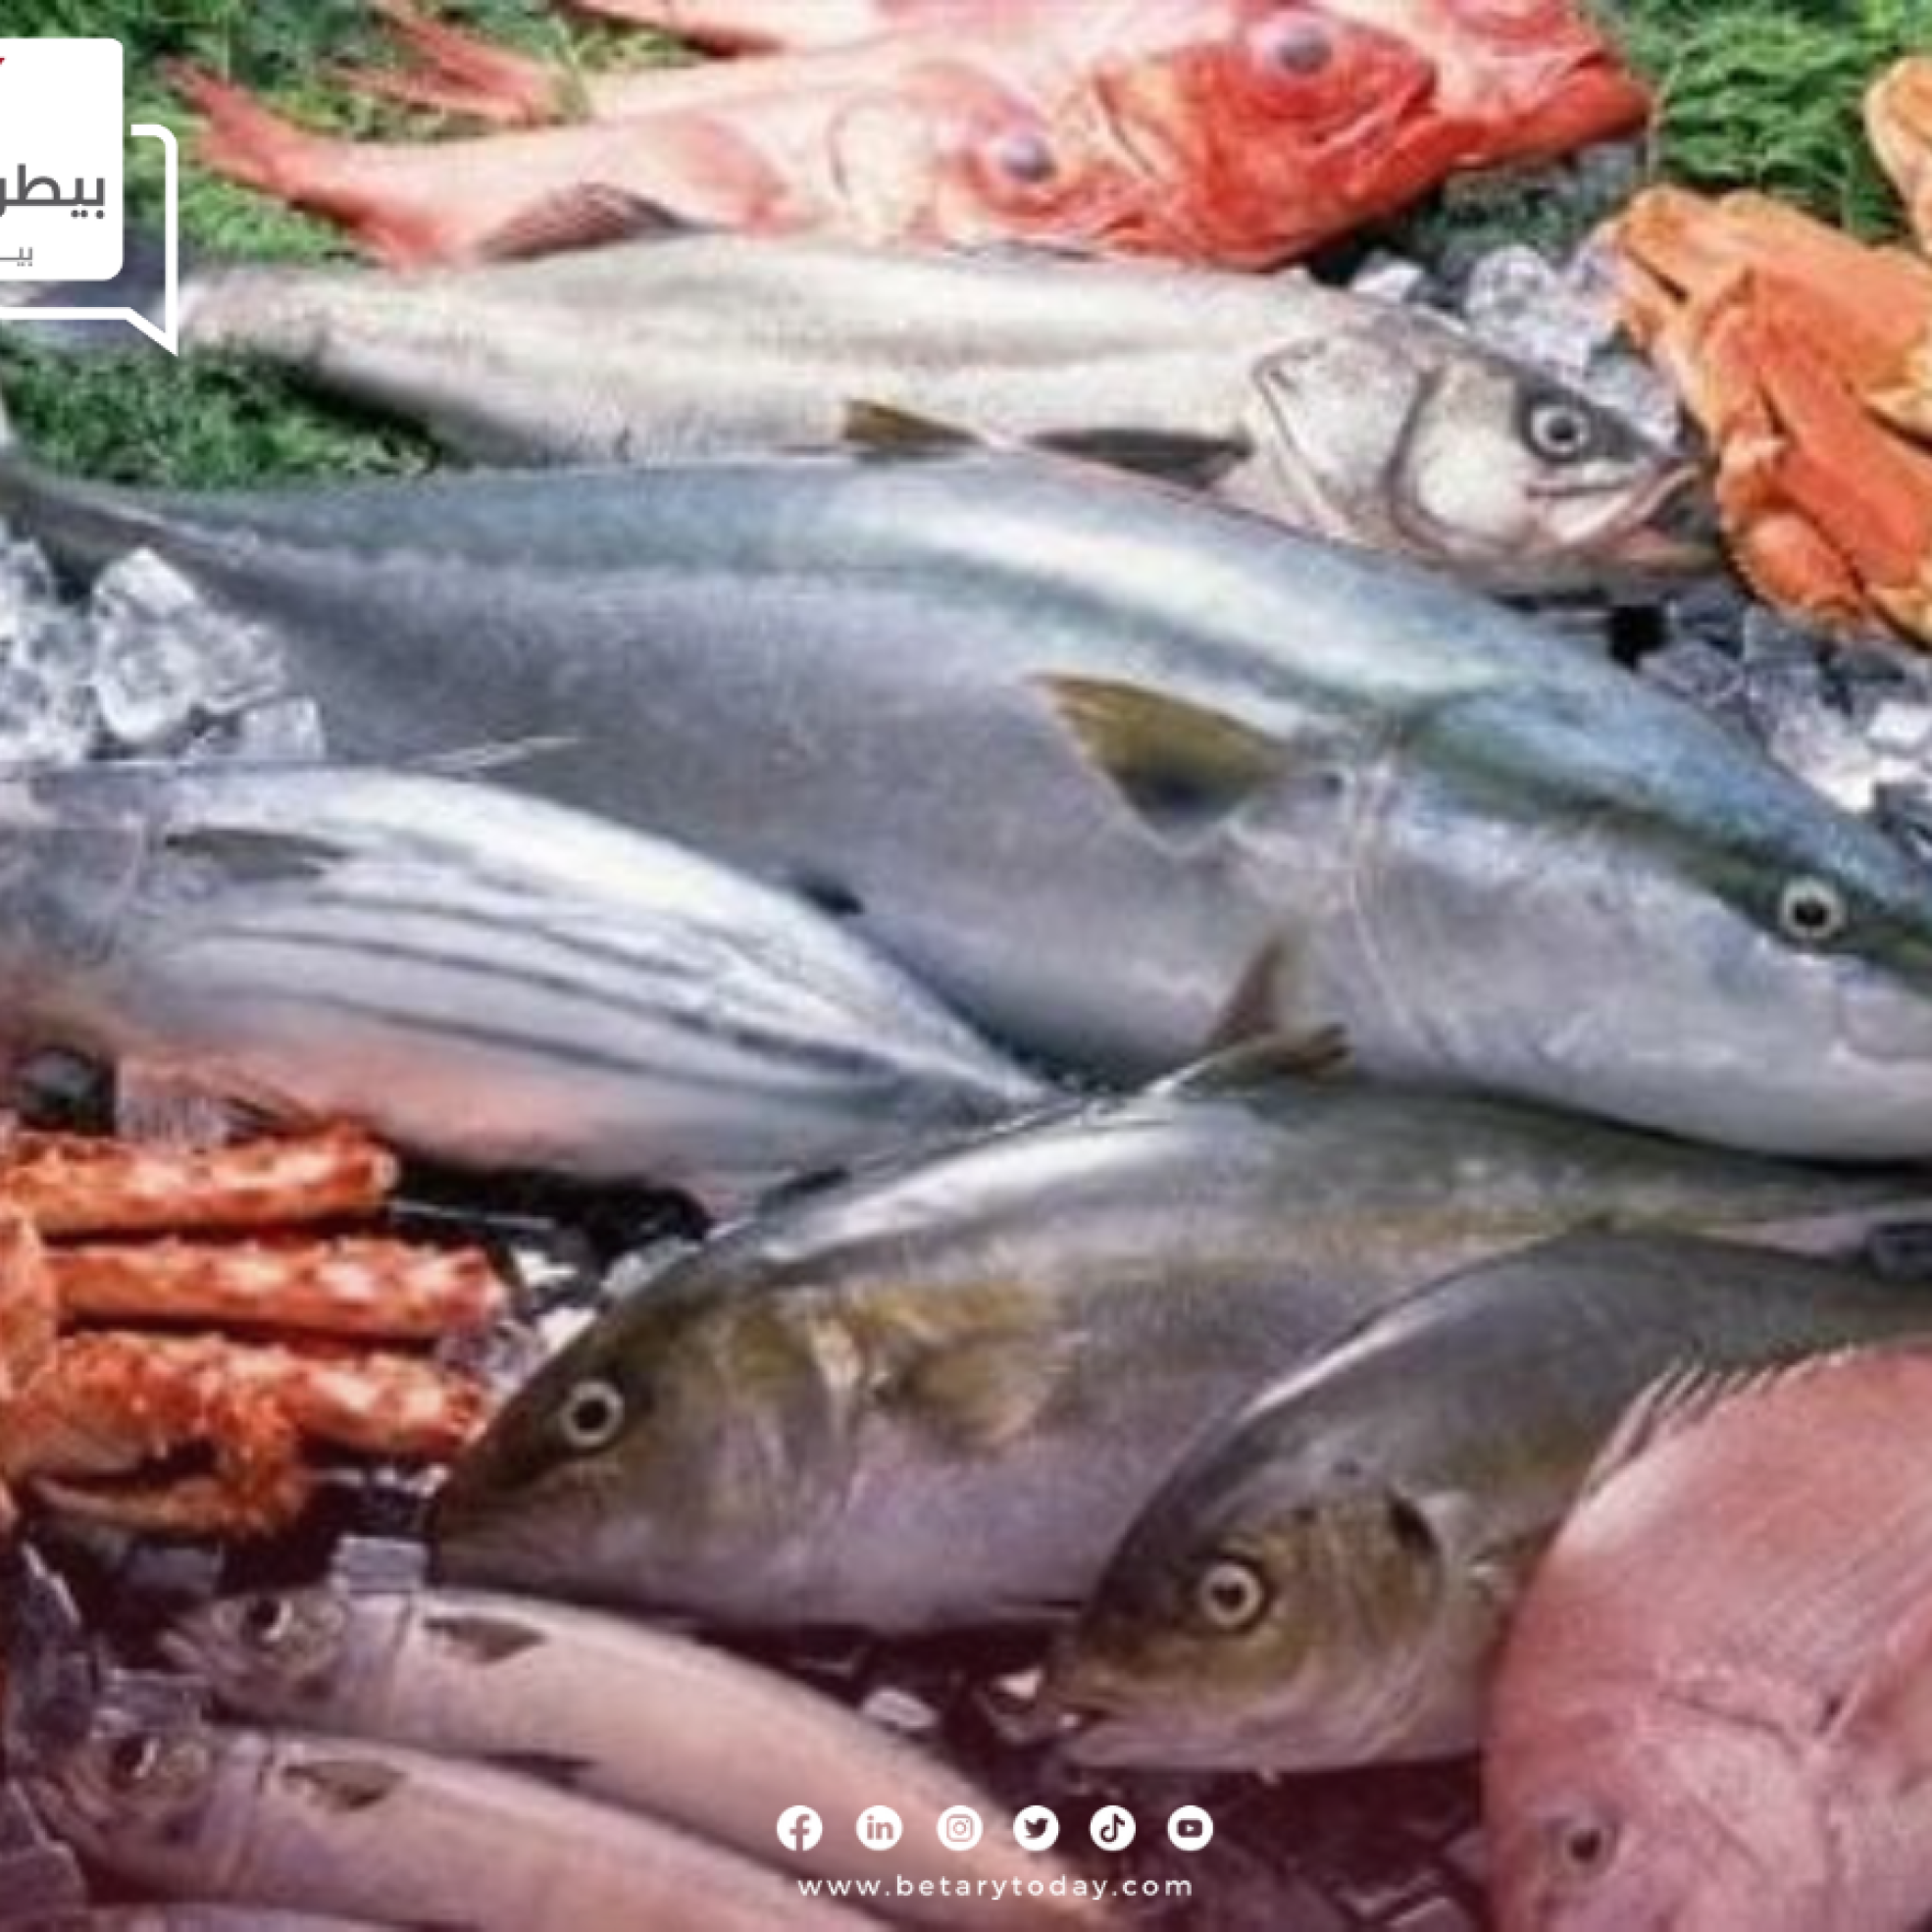 أسعار الأسماك والمأكولات البحرية اليوم الأحد 5 مايو في أسواق العبور